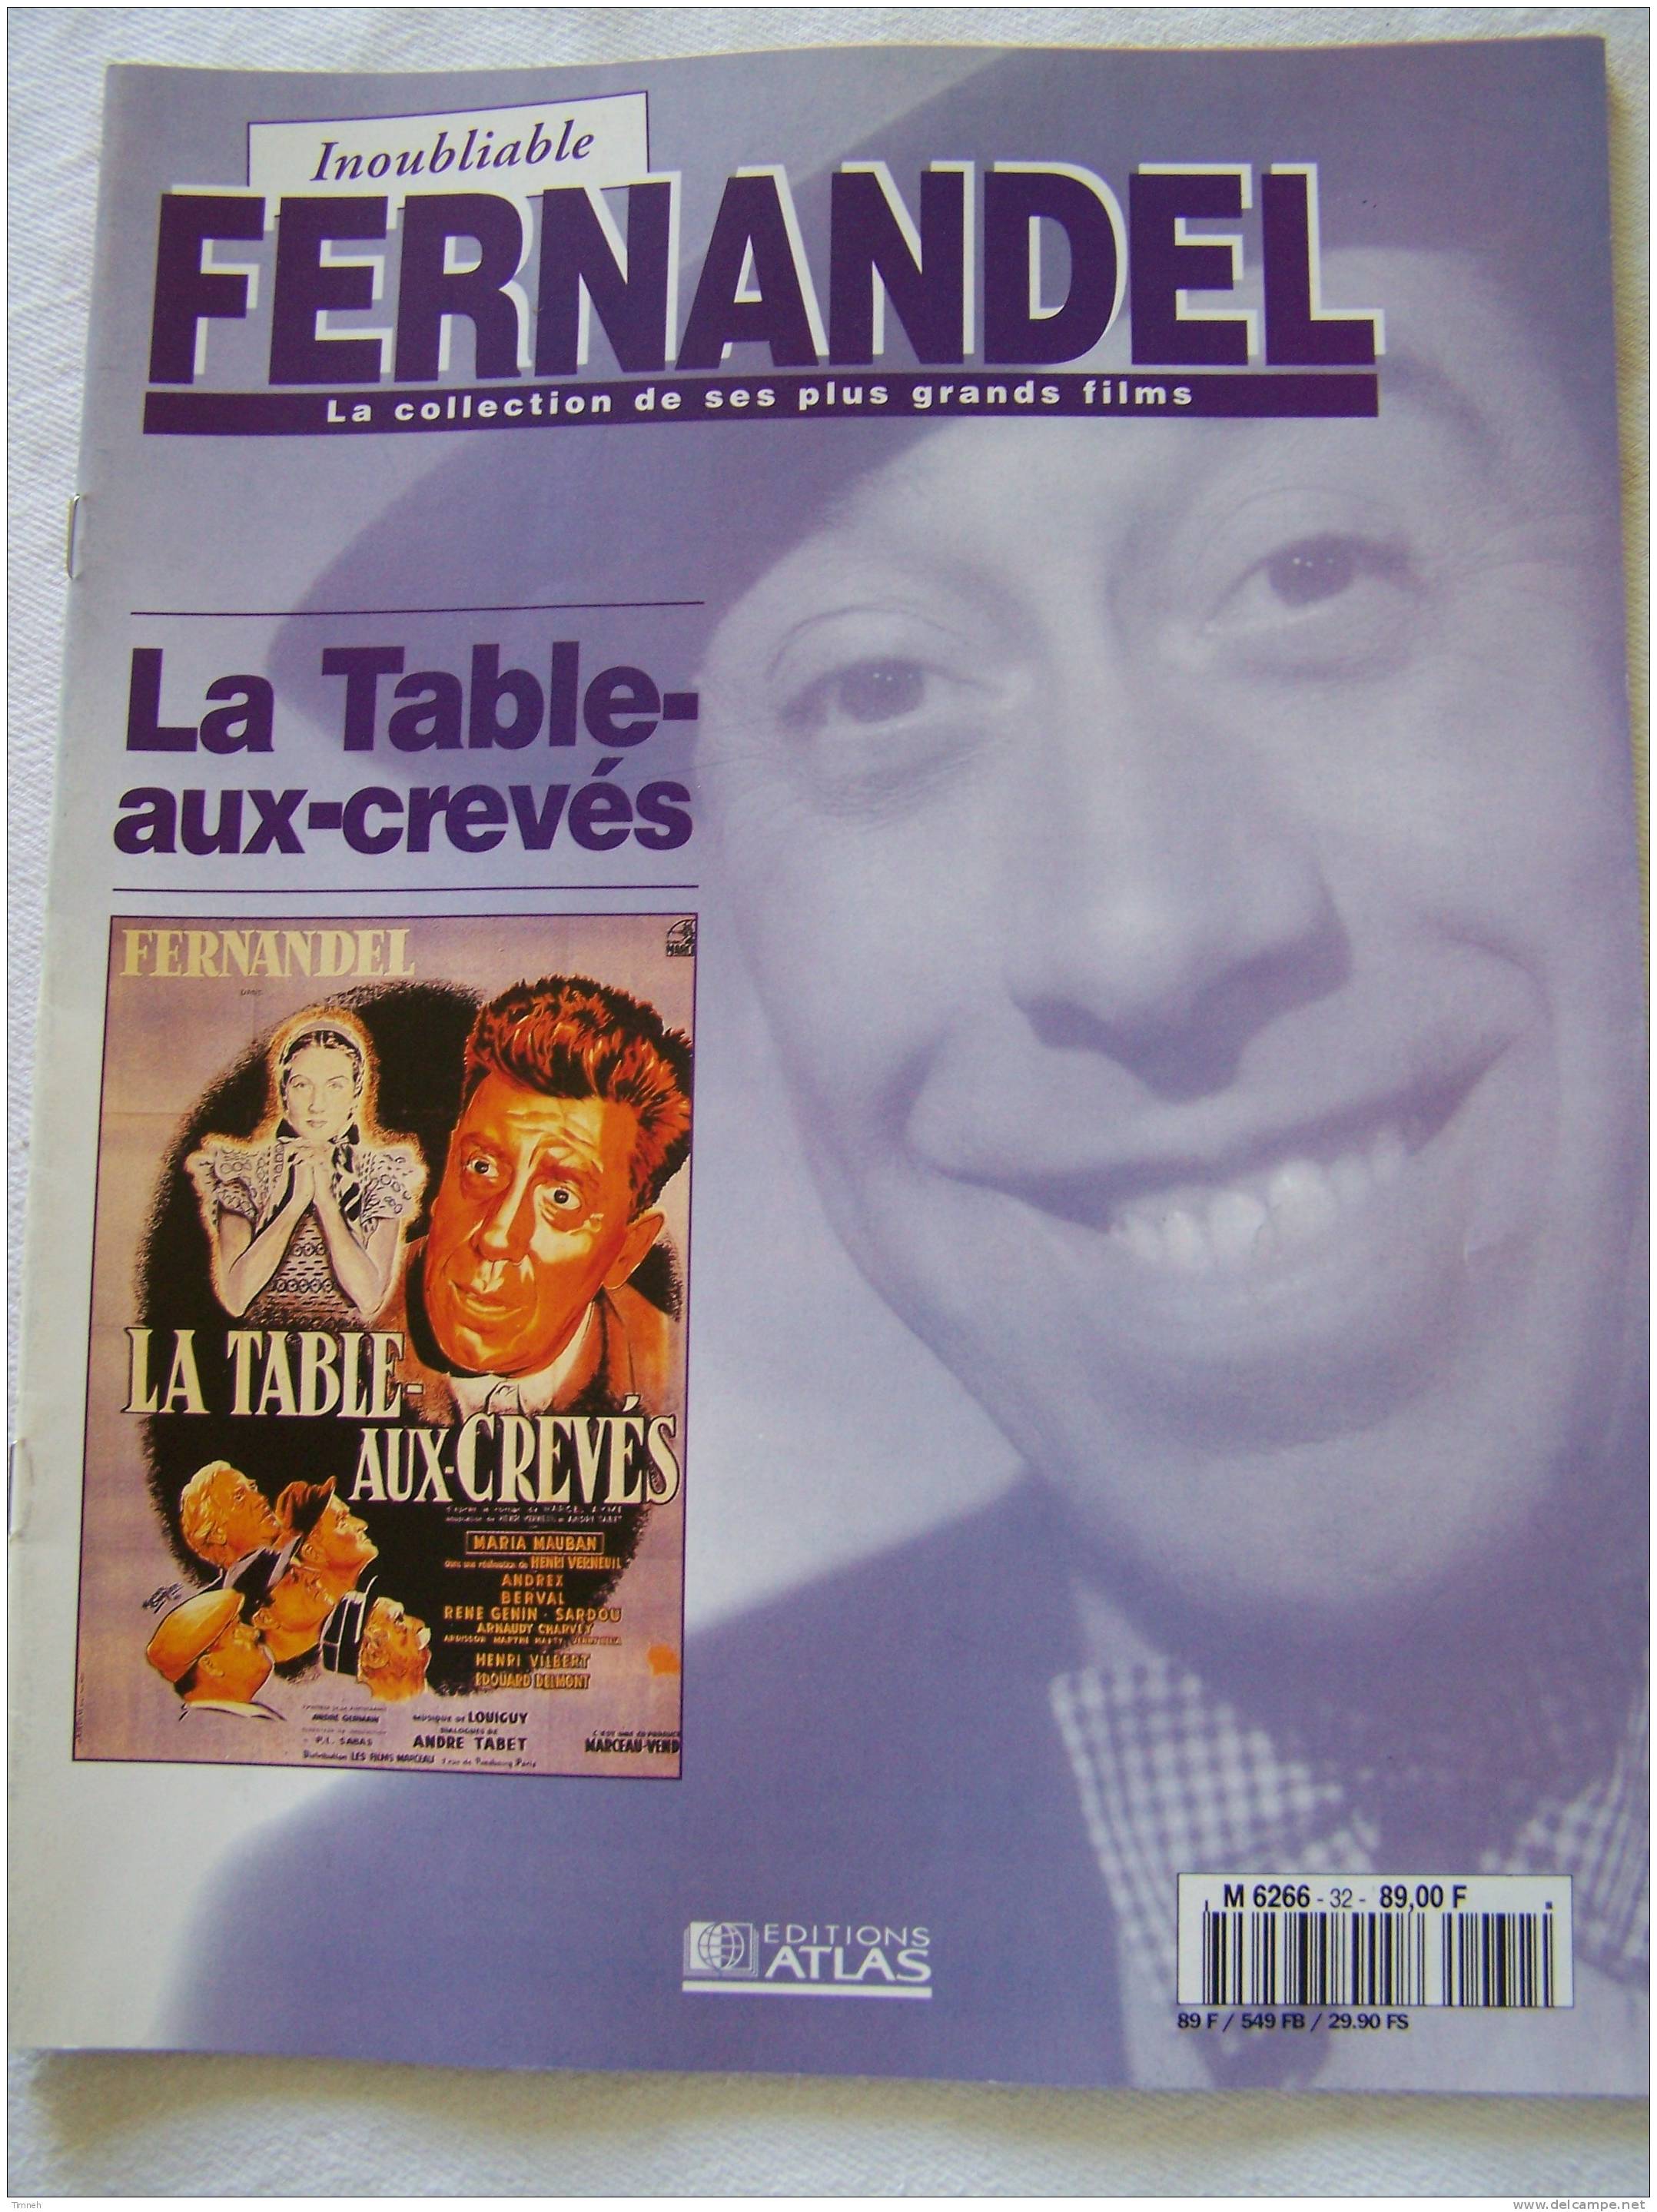 La Table-aux-crevés-Inoubliable FERNANDEL-la Collection De Ses Plus Grands Films-1995 Revue Editions ATLAS- - Cinéma/Télévision